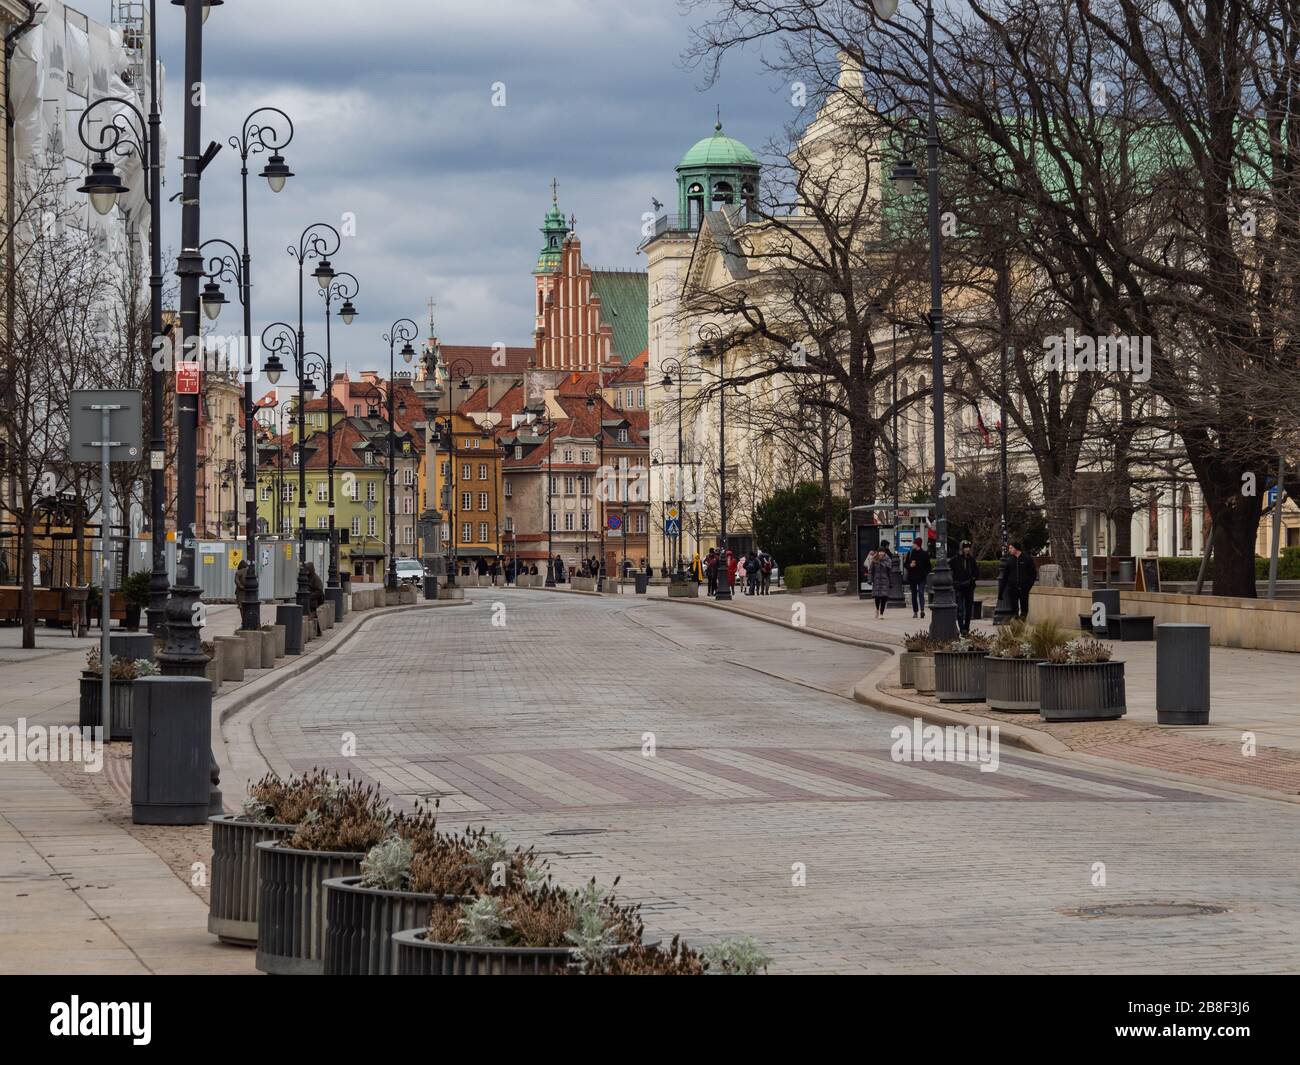 Varsovie/Pologne - 21/03/2020 - rues de la capitale pendant la pandémie de coronavirus, généralement très bondées de personnes ou de voitures, maintenant presque vides. Vieille ville/ Banque D'Images